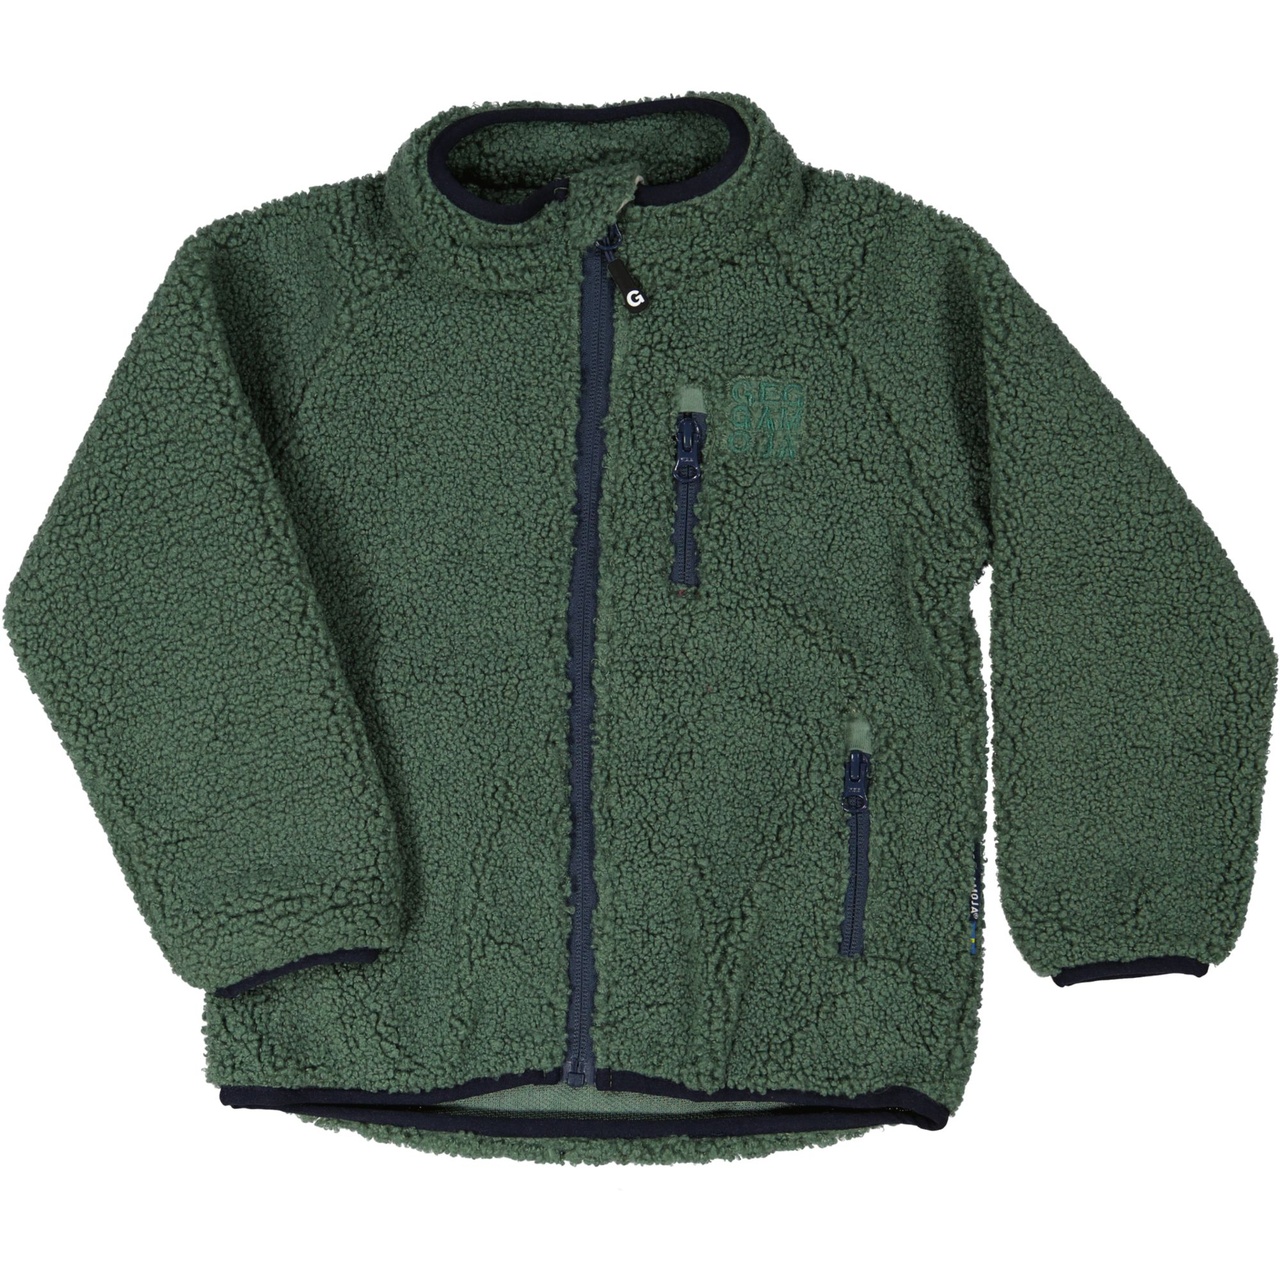 Pile jacket Moss green  146/152